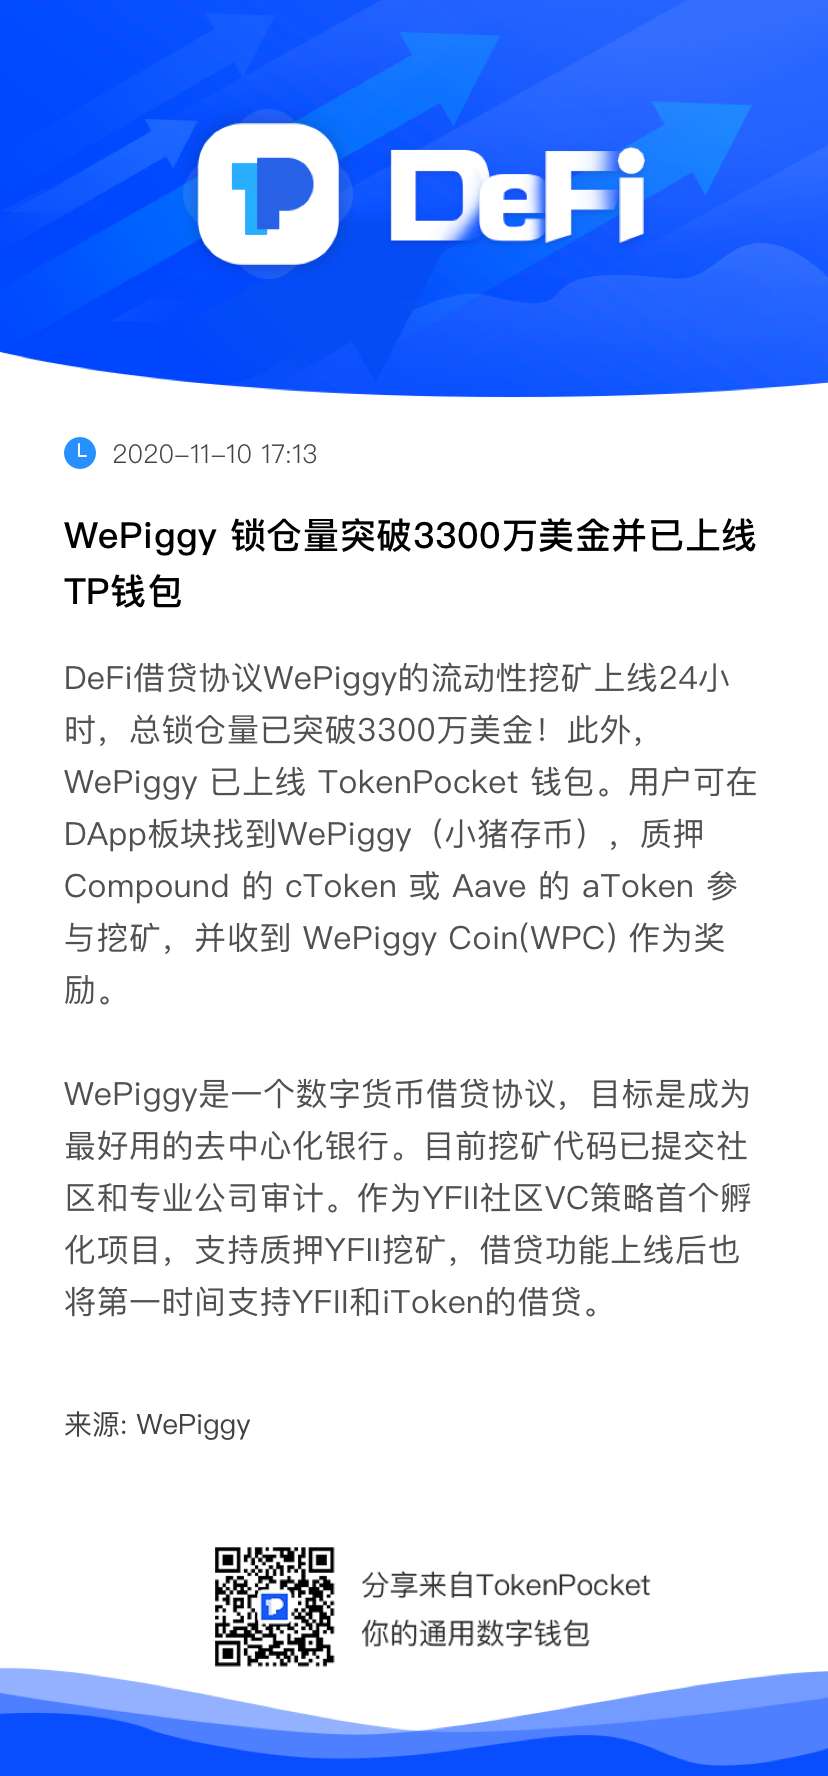 WePiggy协议锁仓量已突破3700万美金